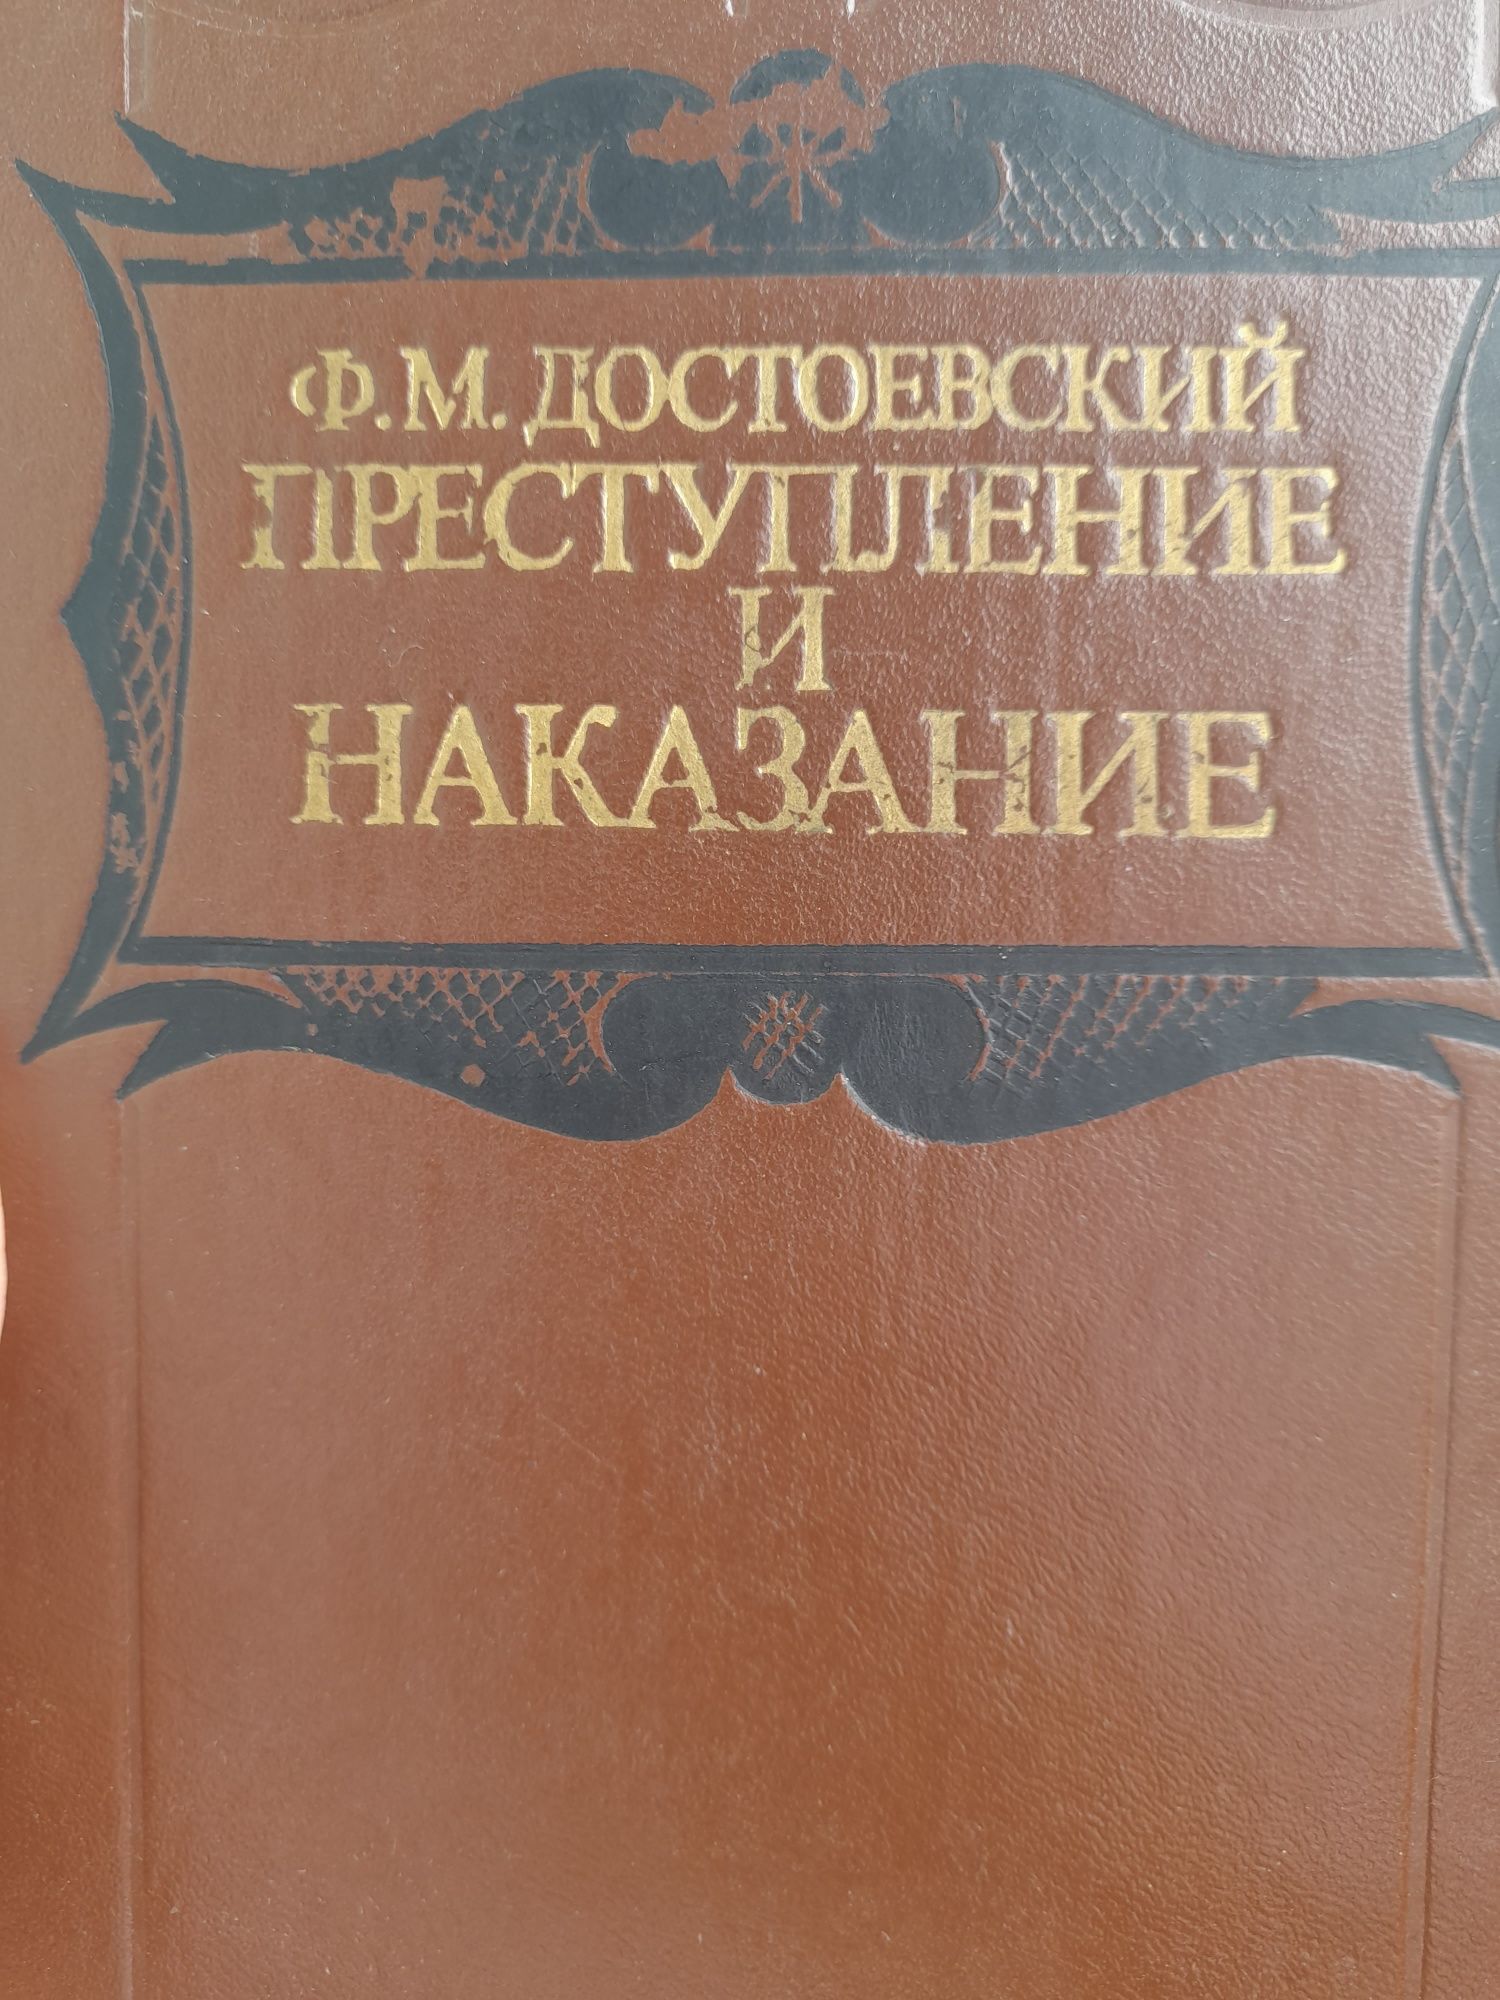 Ф.М.Достоевский " Преступление и наказание"